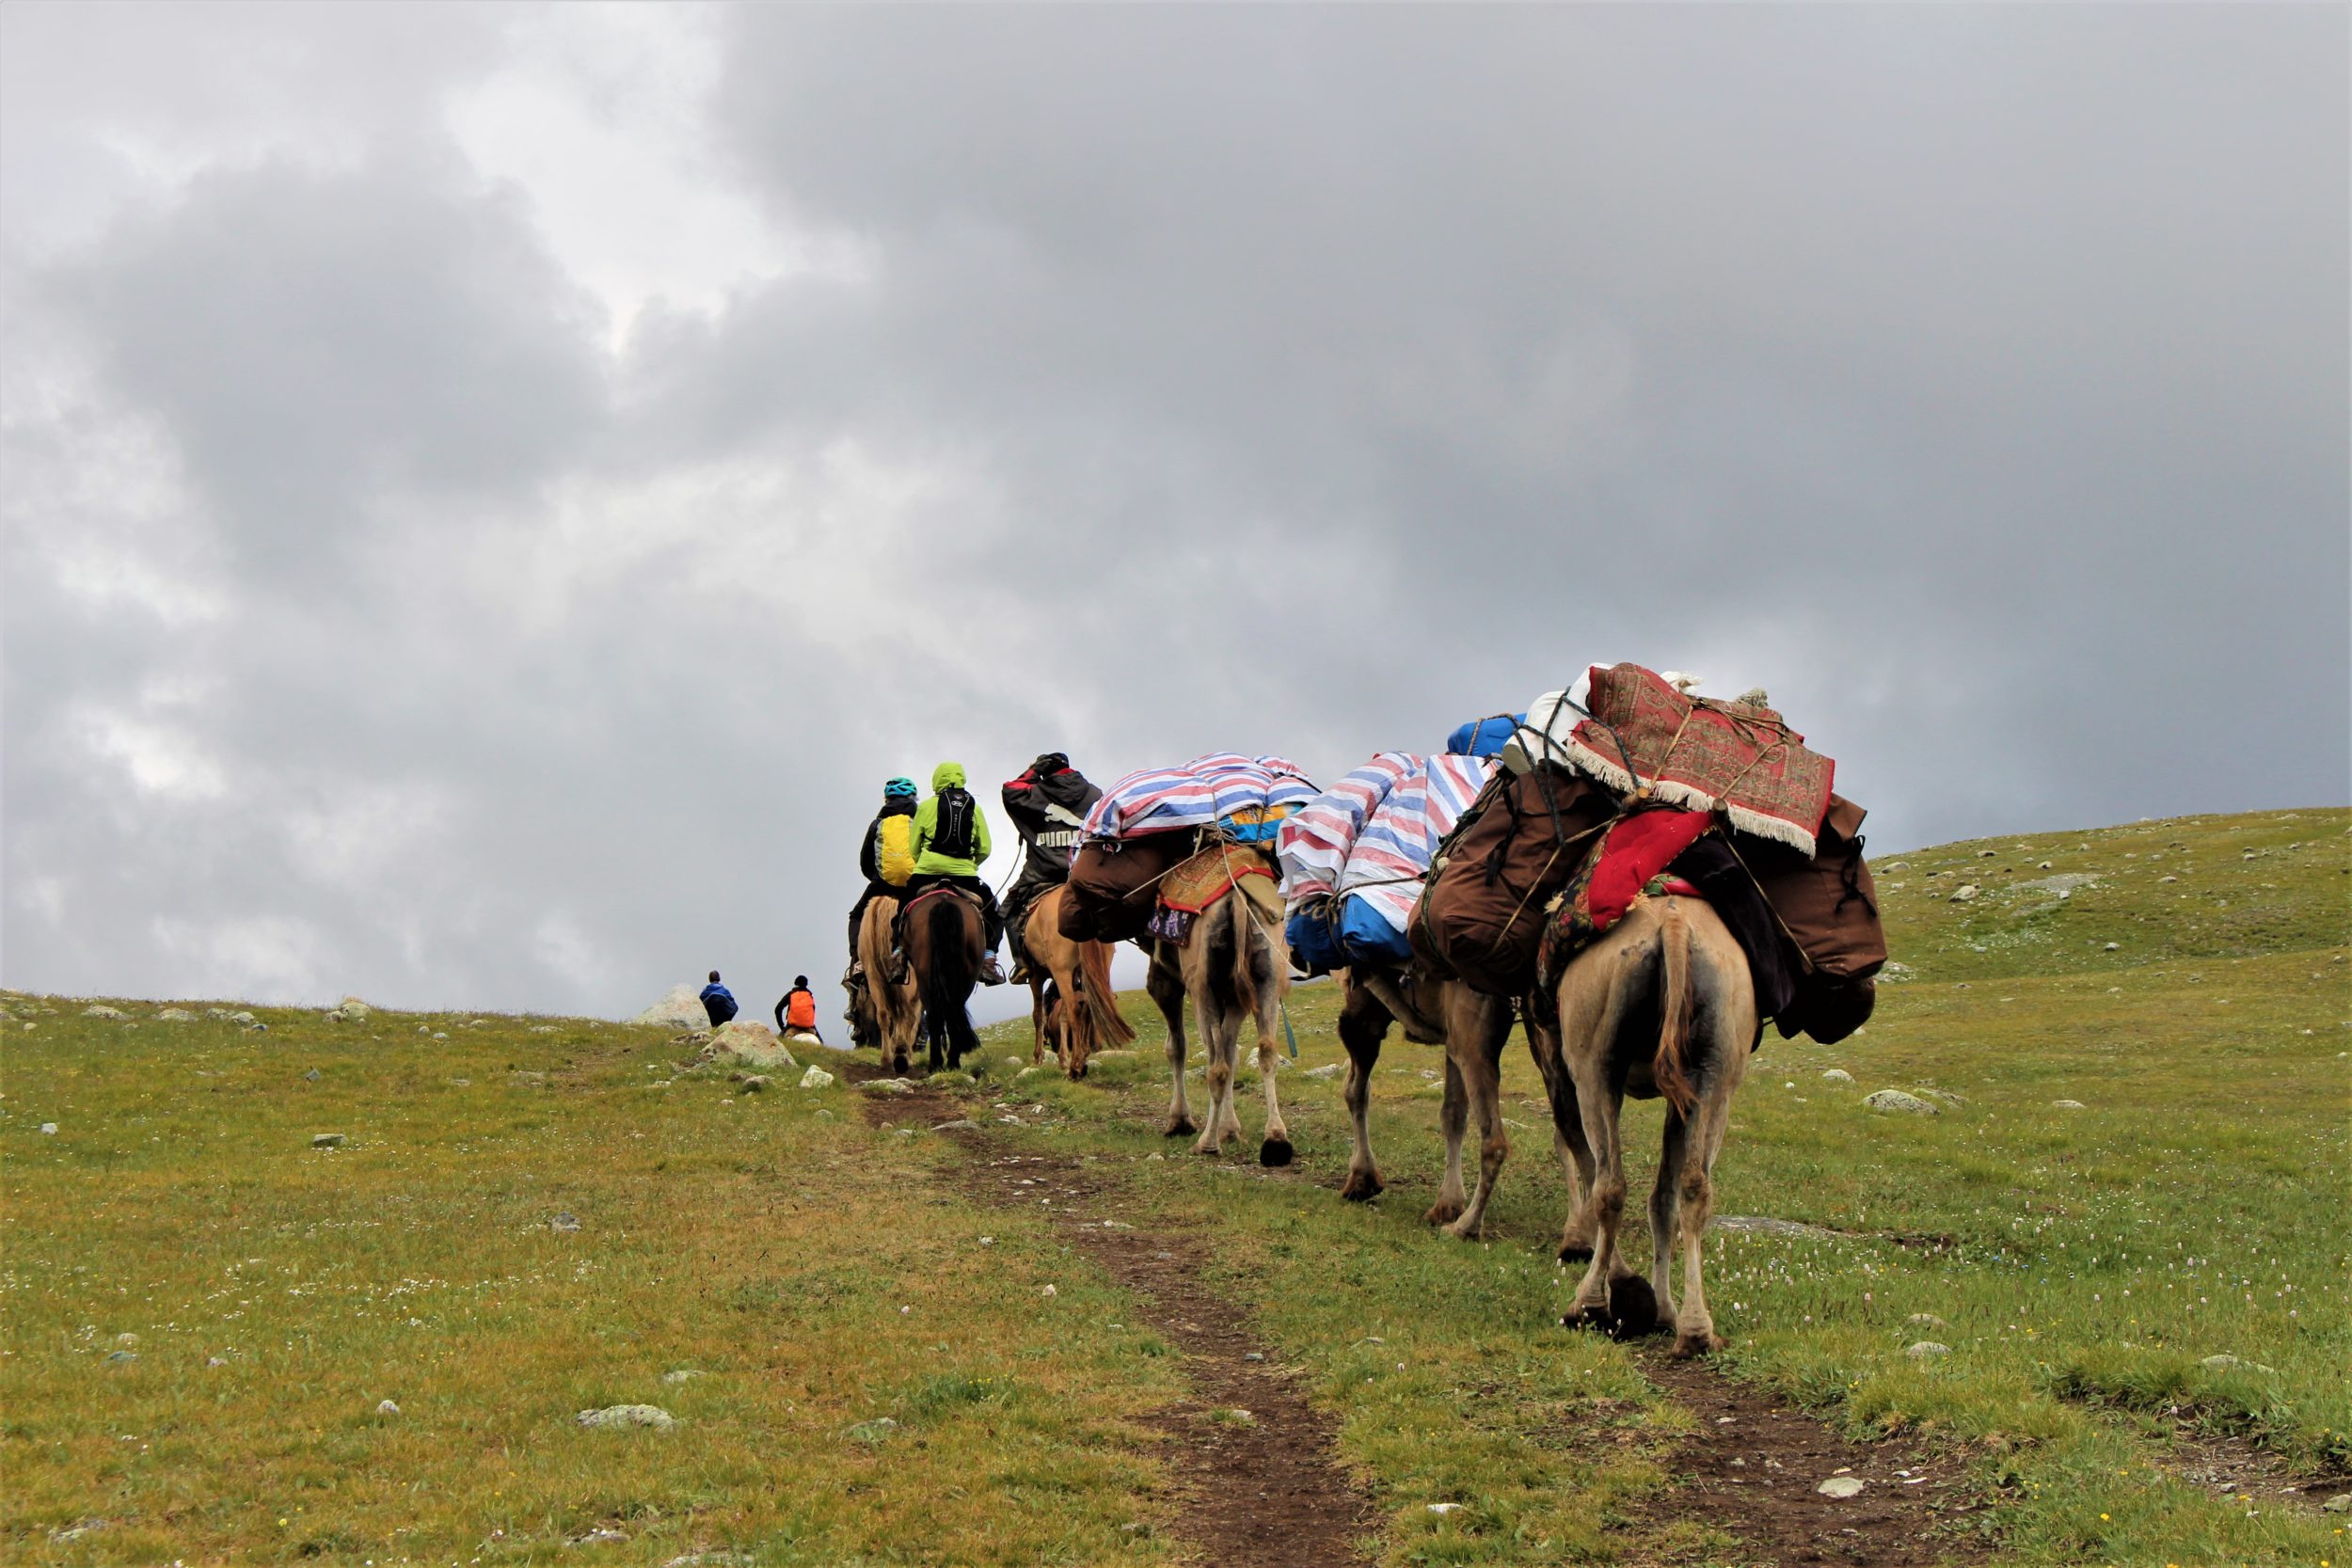 Mongolia horseback riding e1582195406660 - Reason to visit Mongolia